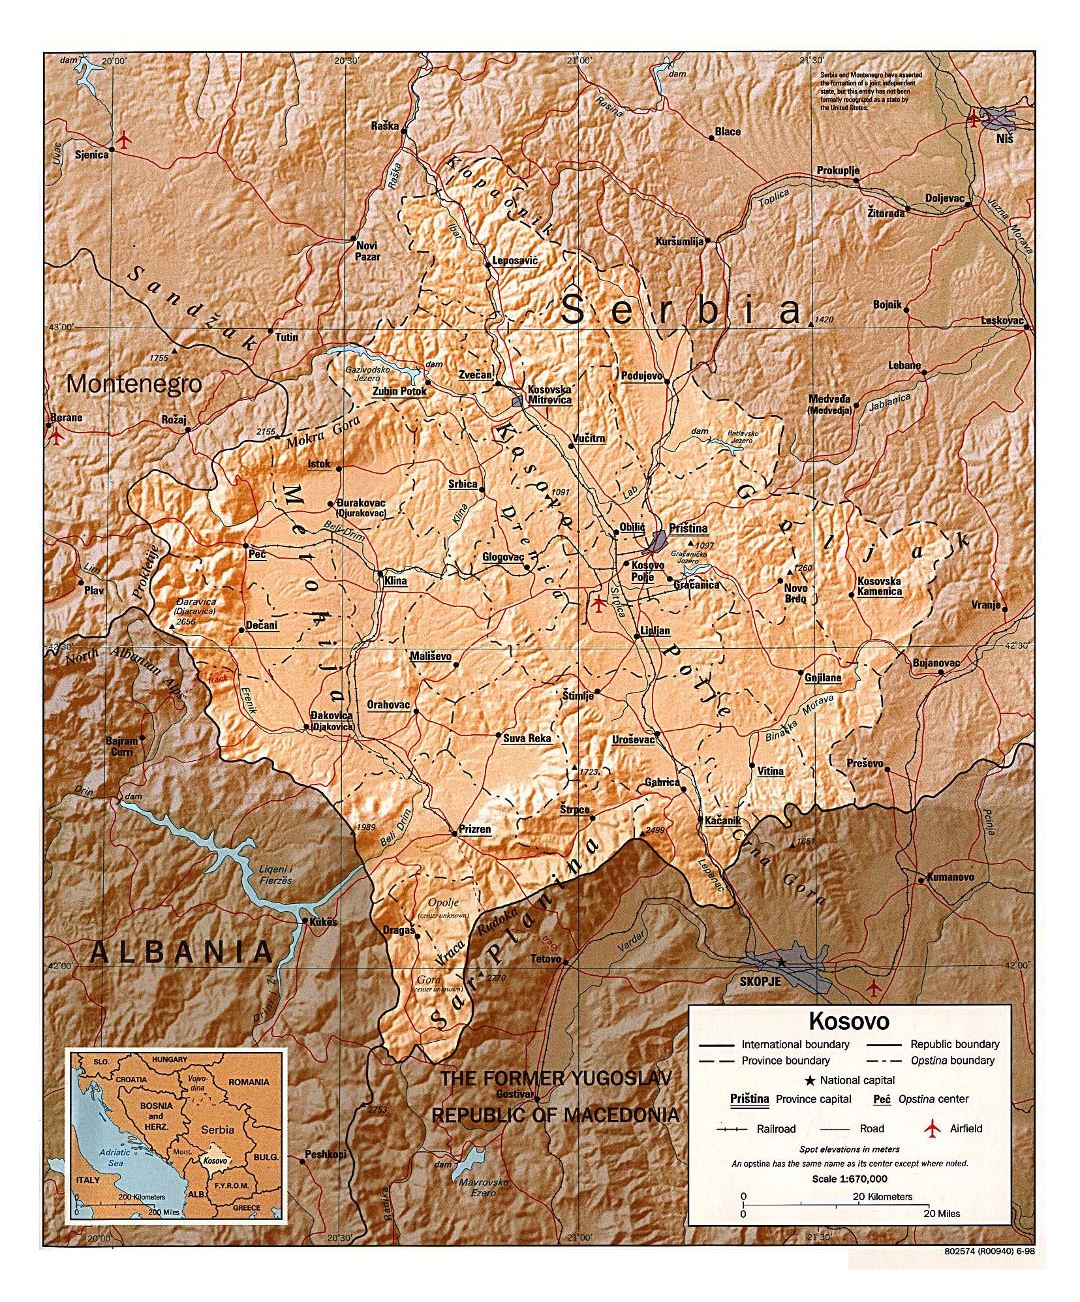 Grande mapa político y administrativo de Kosovo con alivio, carreteras, ferrocarriles, aeropuertos y principales ciudades - 1998